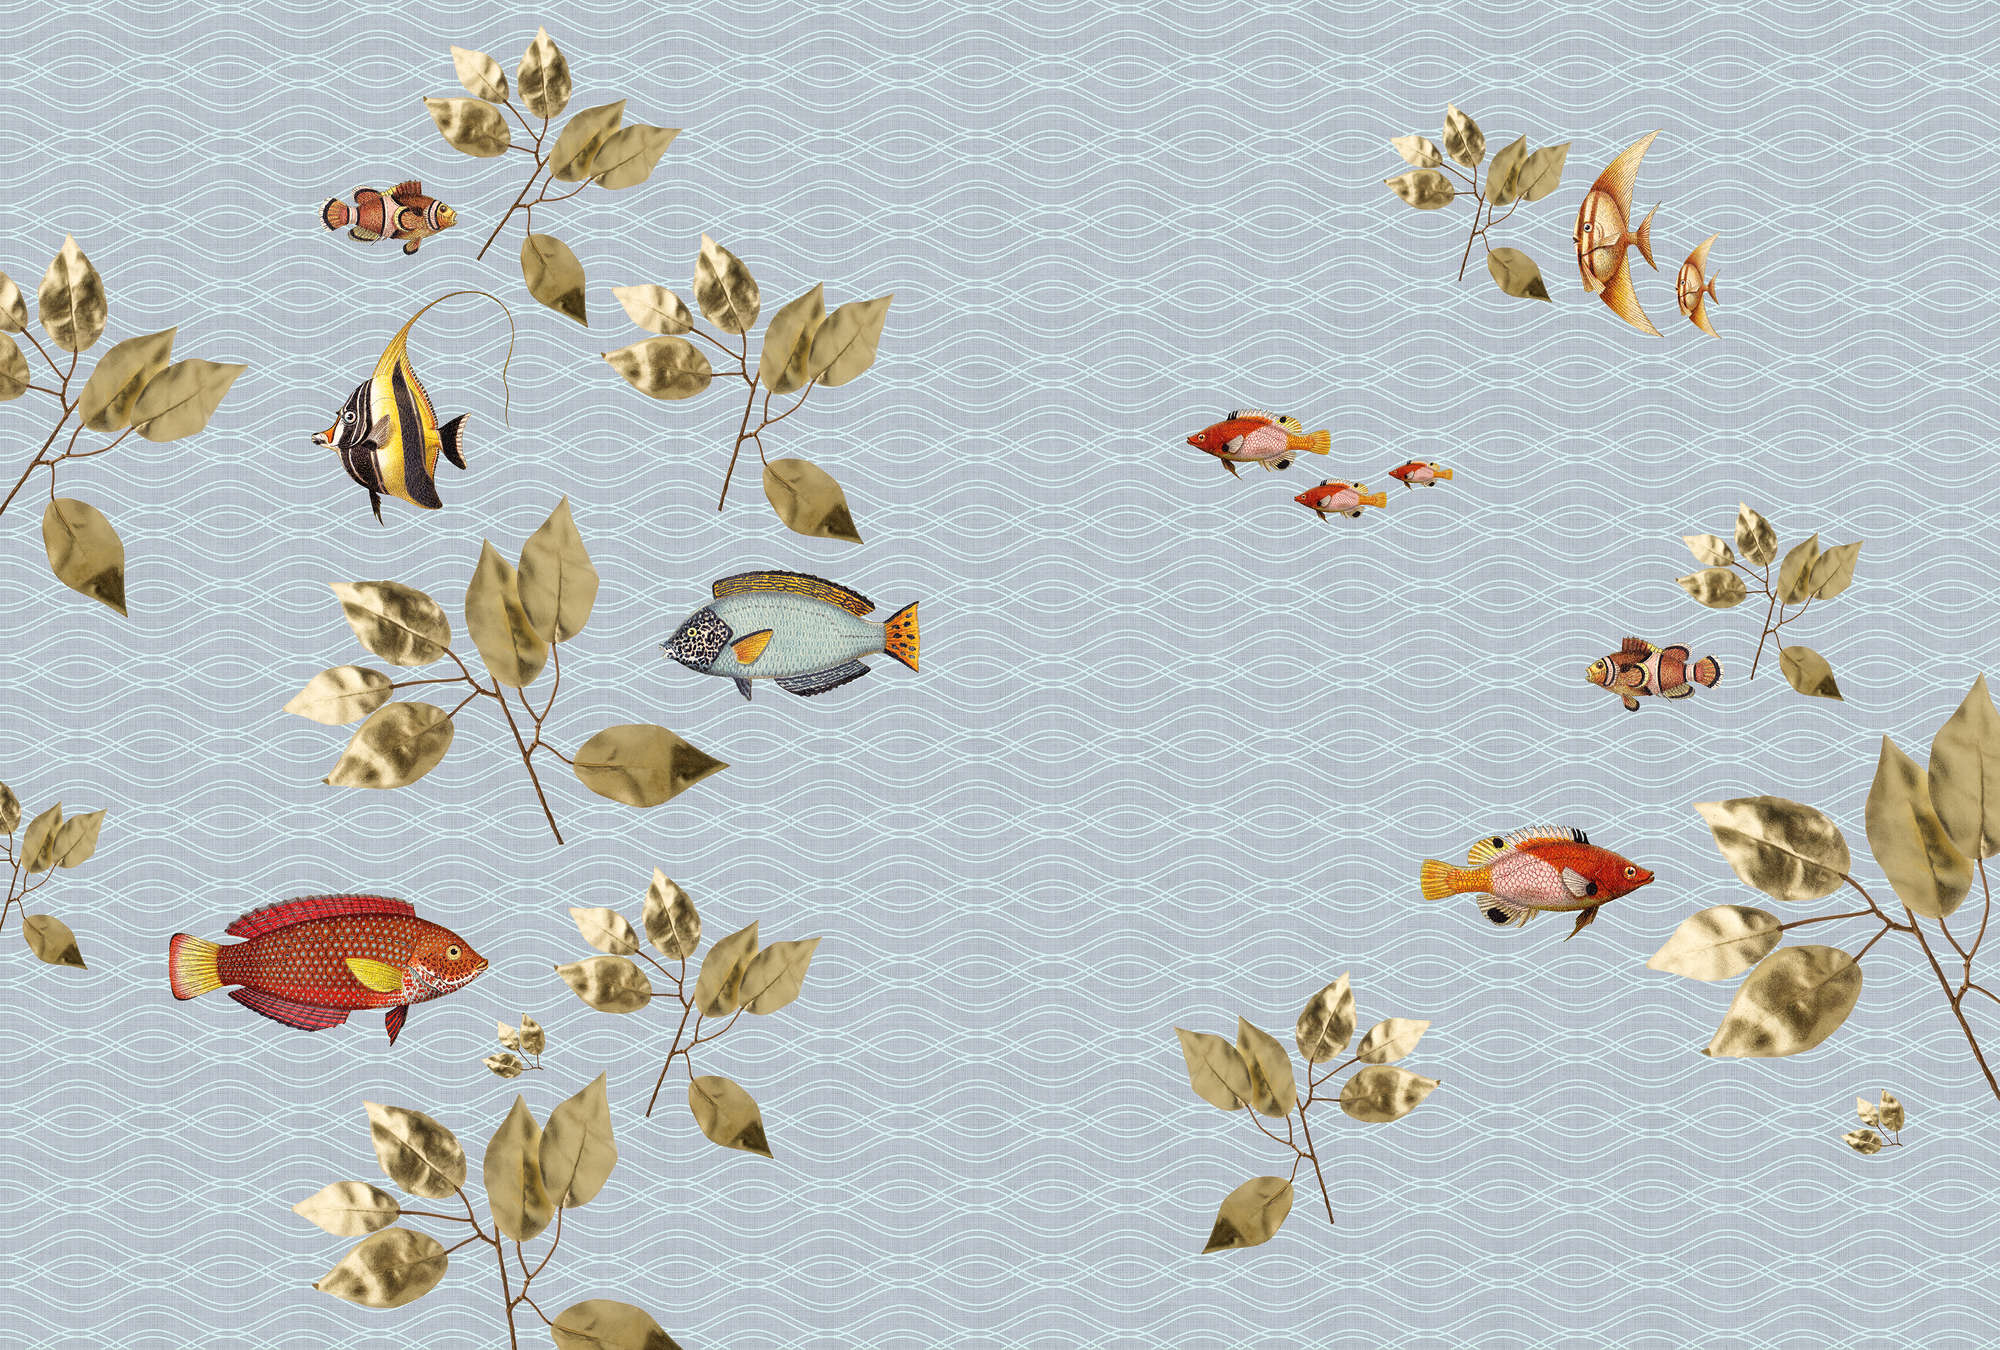             Brilliant fish 1 - Carta da parati a forma di pesce volante con struttura in lino naturale - Vello liscio blu | madreperla
        